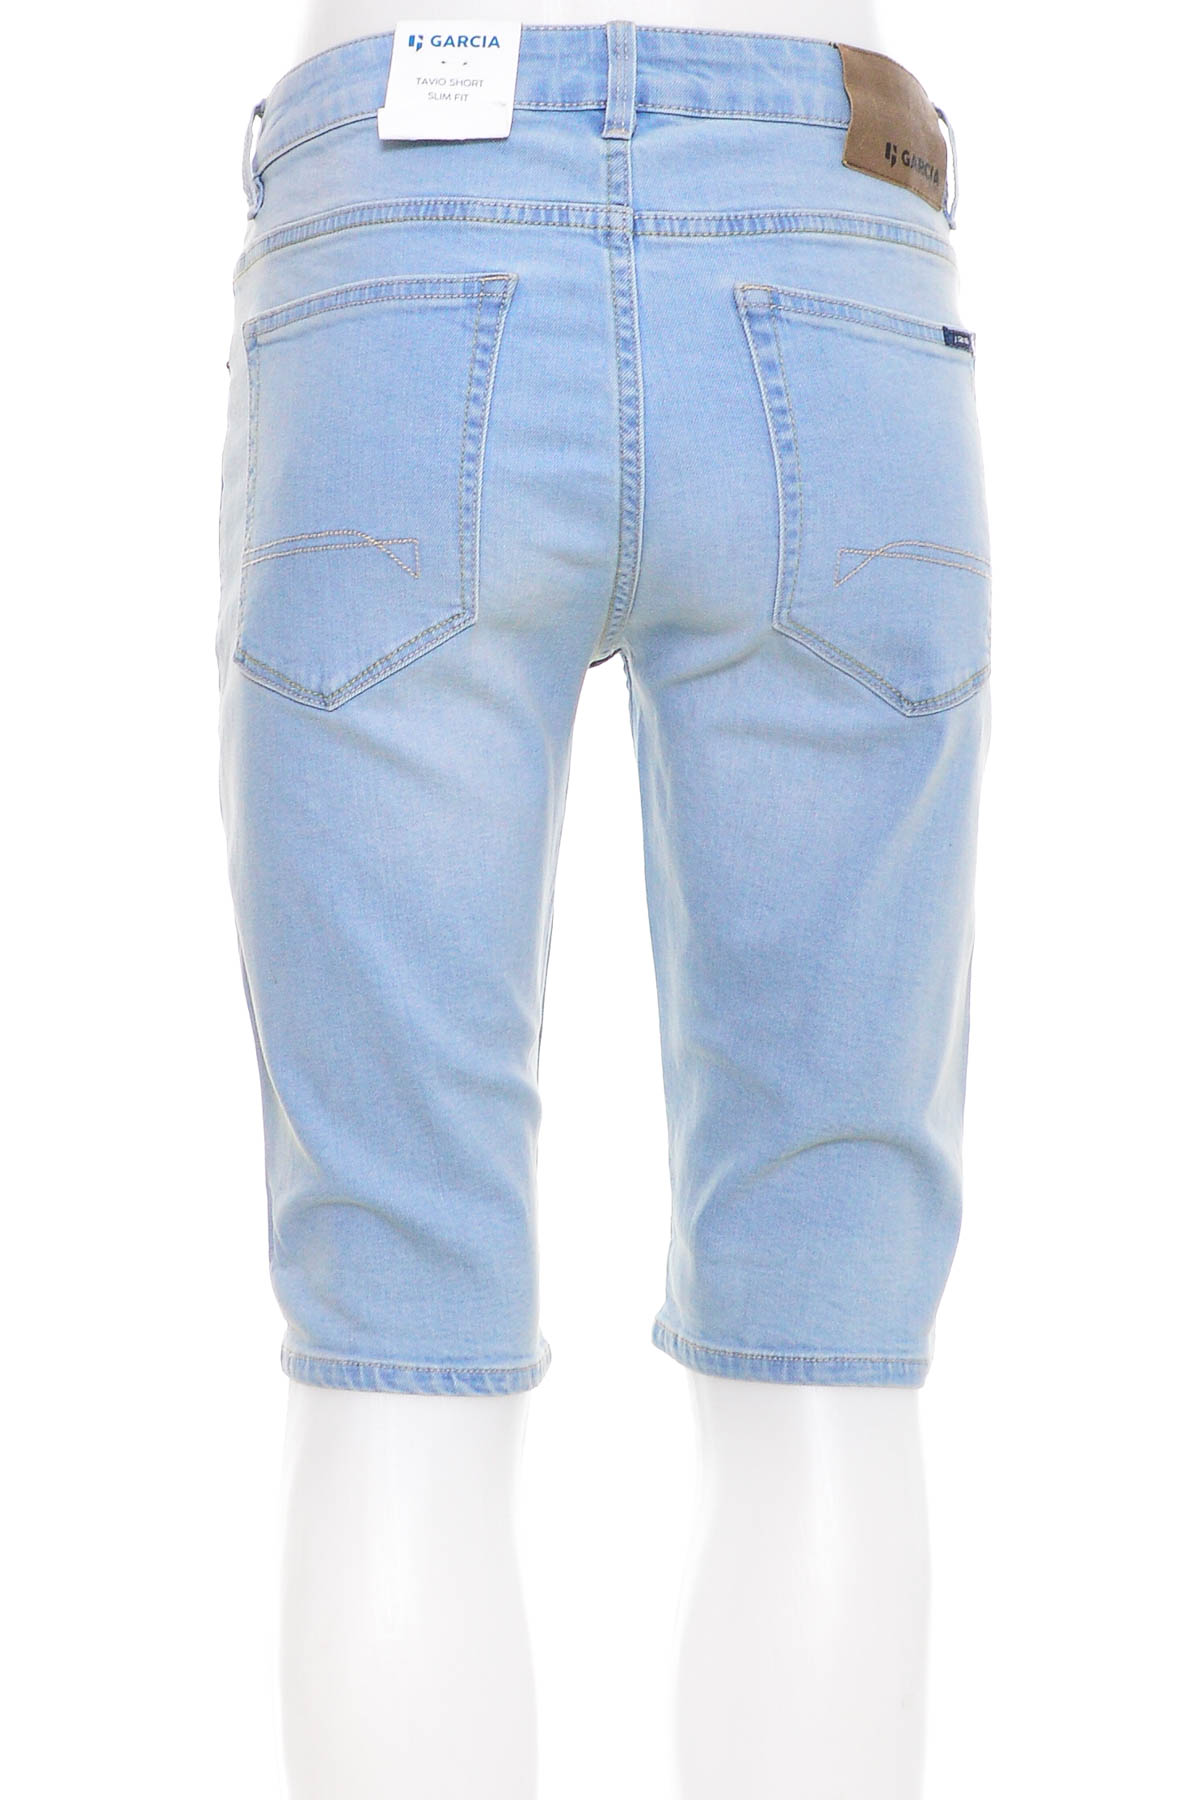 Κοντά παντελόνια για αγόρι - Garcia - 1